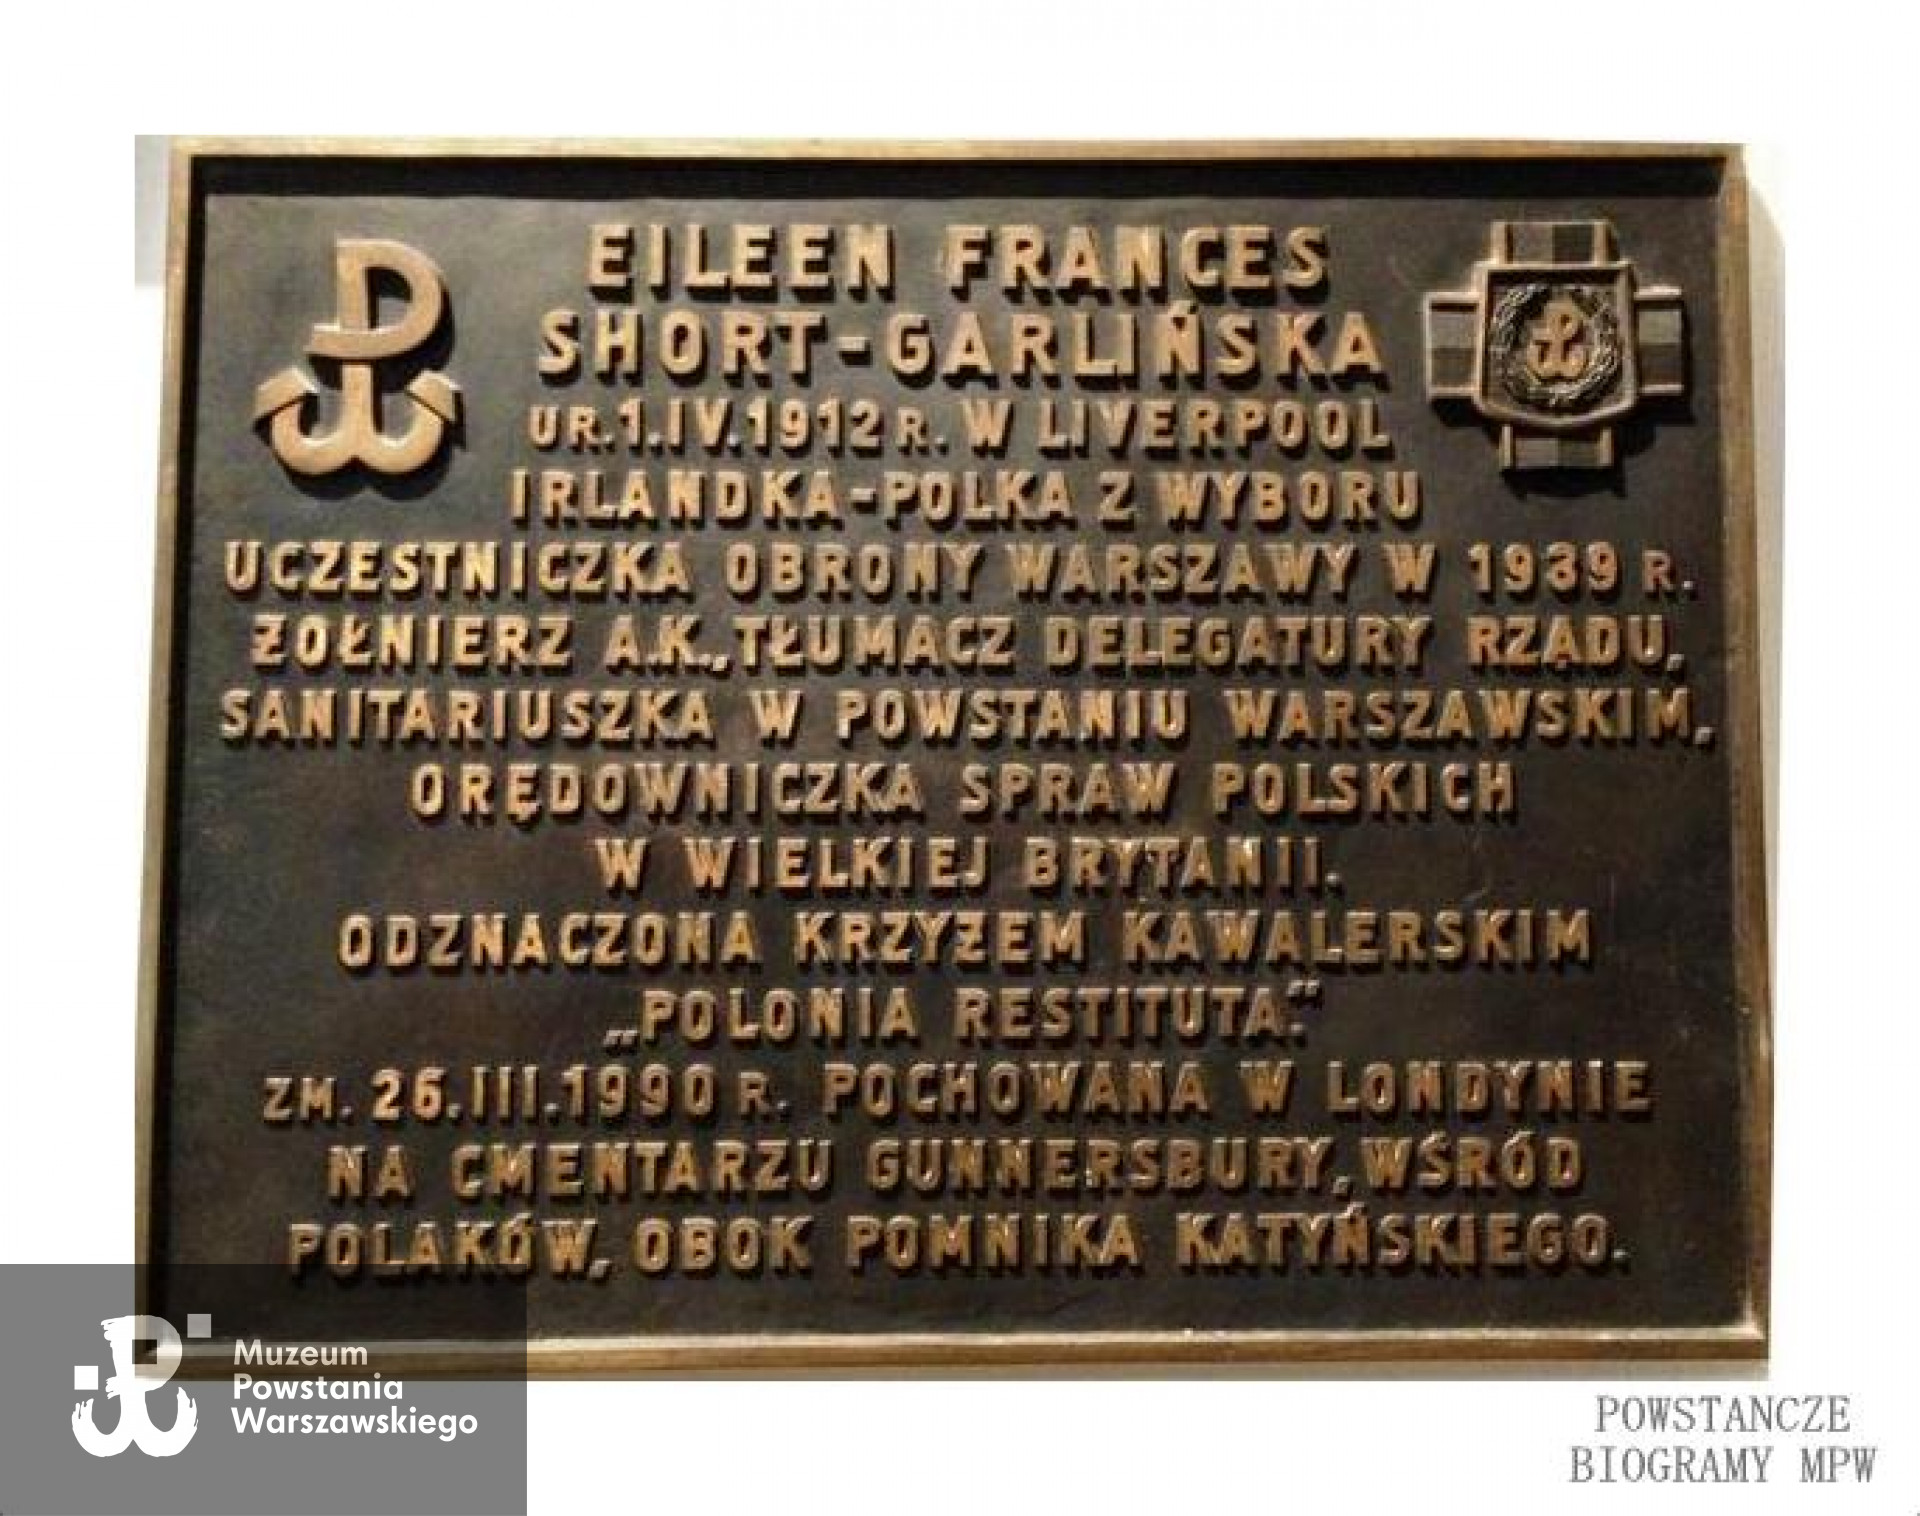 Tablica upamiętniająca heroiczną postawę Eileen Frances Short-Garlińskiej -  Katedra  Polowa Wojska Polskiego w Warszawie.